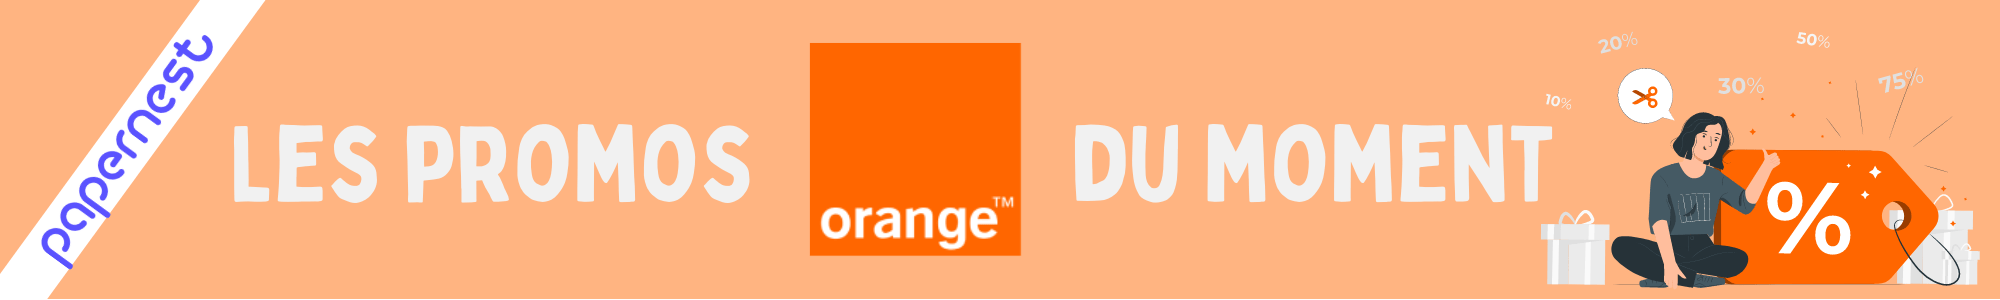 Promosi Orange